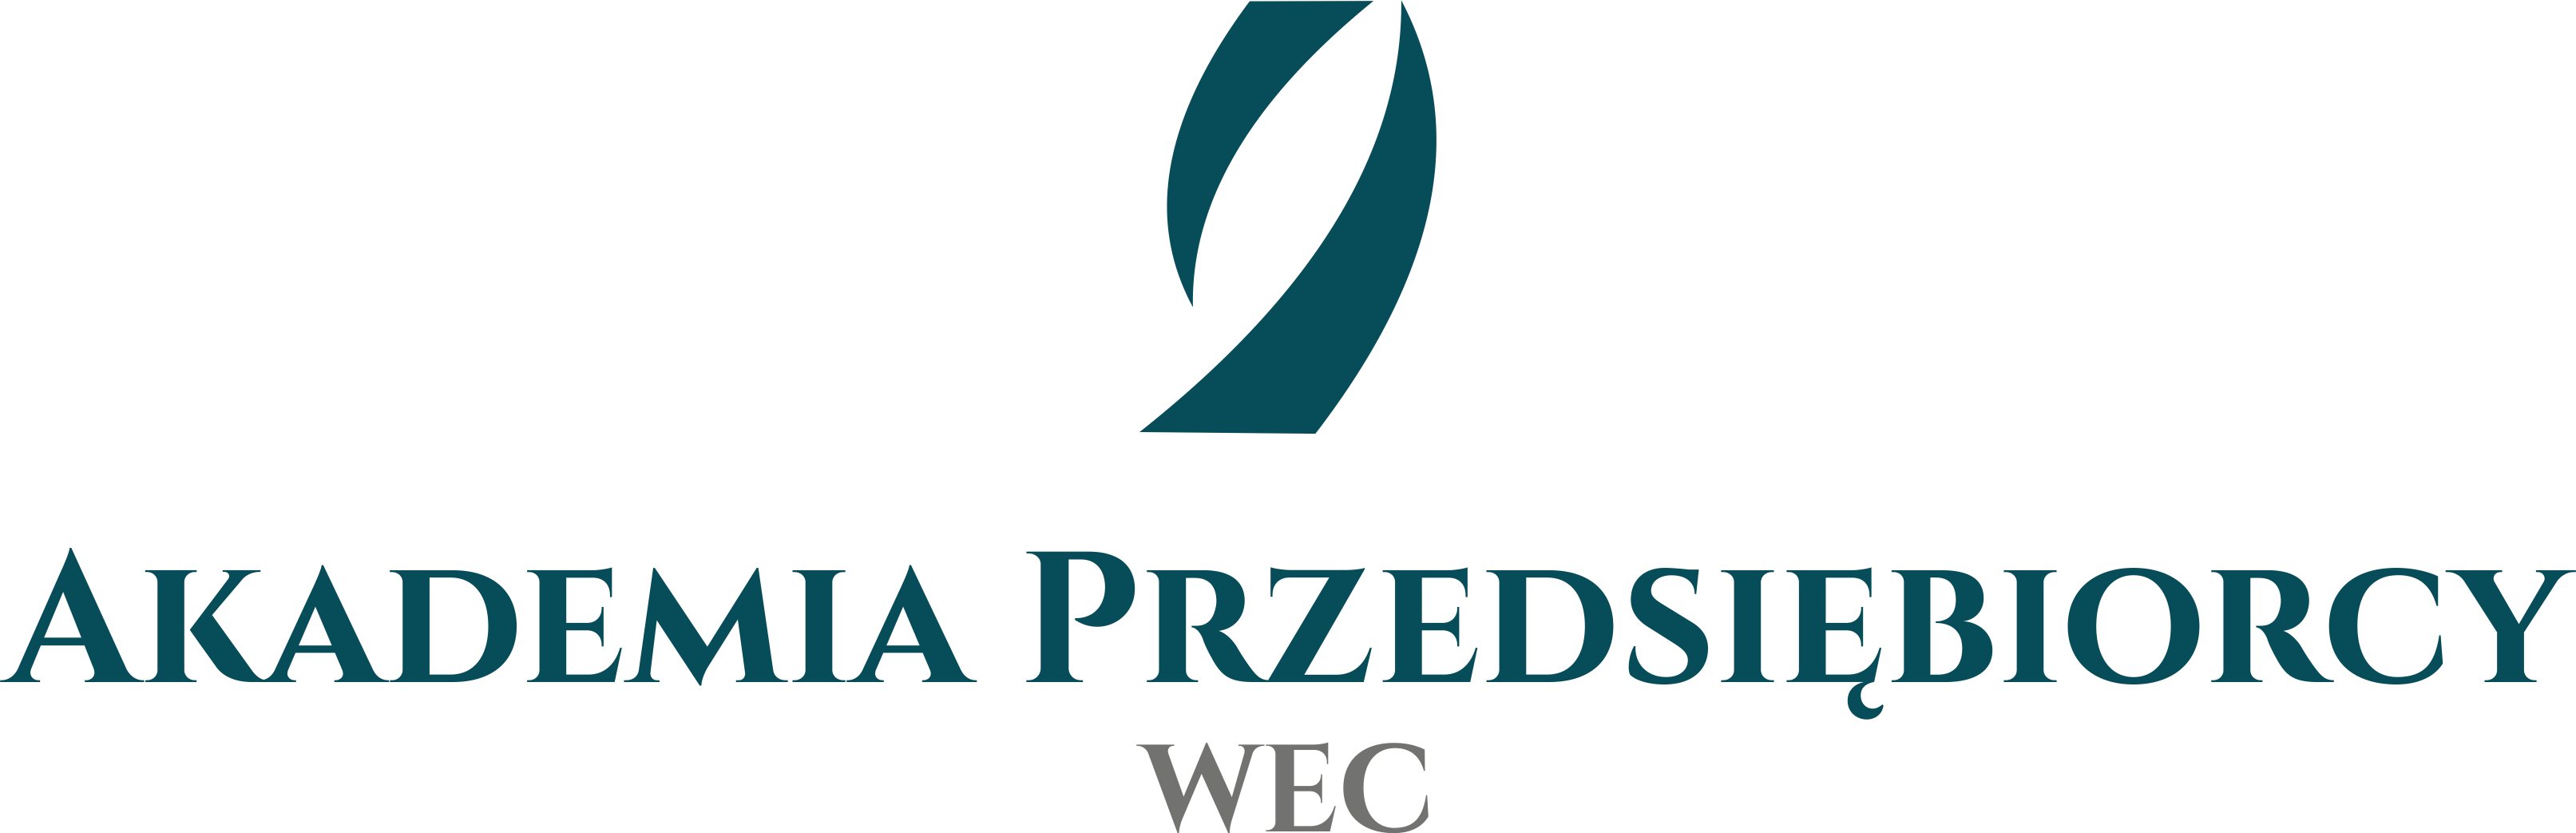 WITAMY NOWYCH TRENERÓW - Akademia Przedsiębiorcy - Szkolenia windykacyjne, prawne